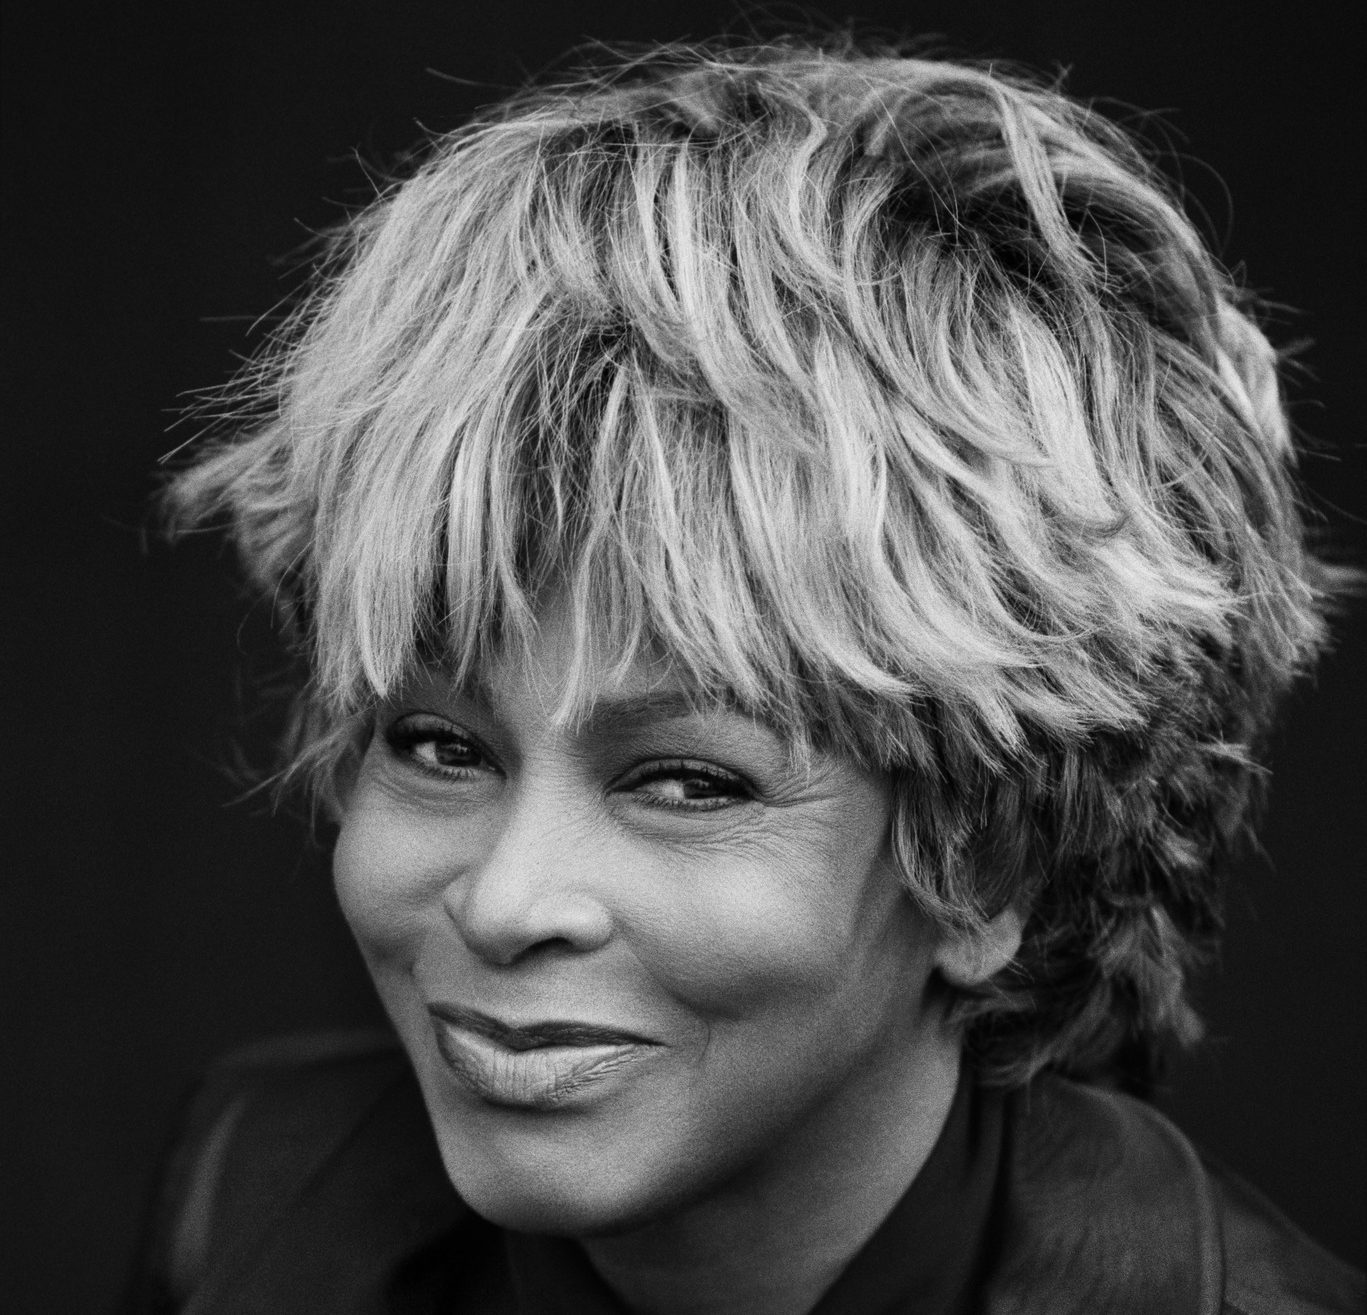 Tina Turner: hányatott gyermekkor, bántalmazás és újrakezdés, majd a későn megtalált béke